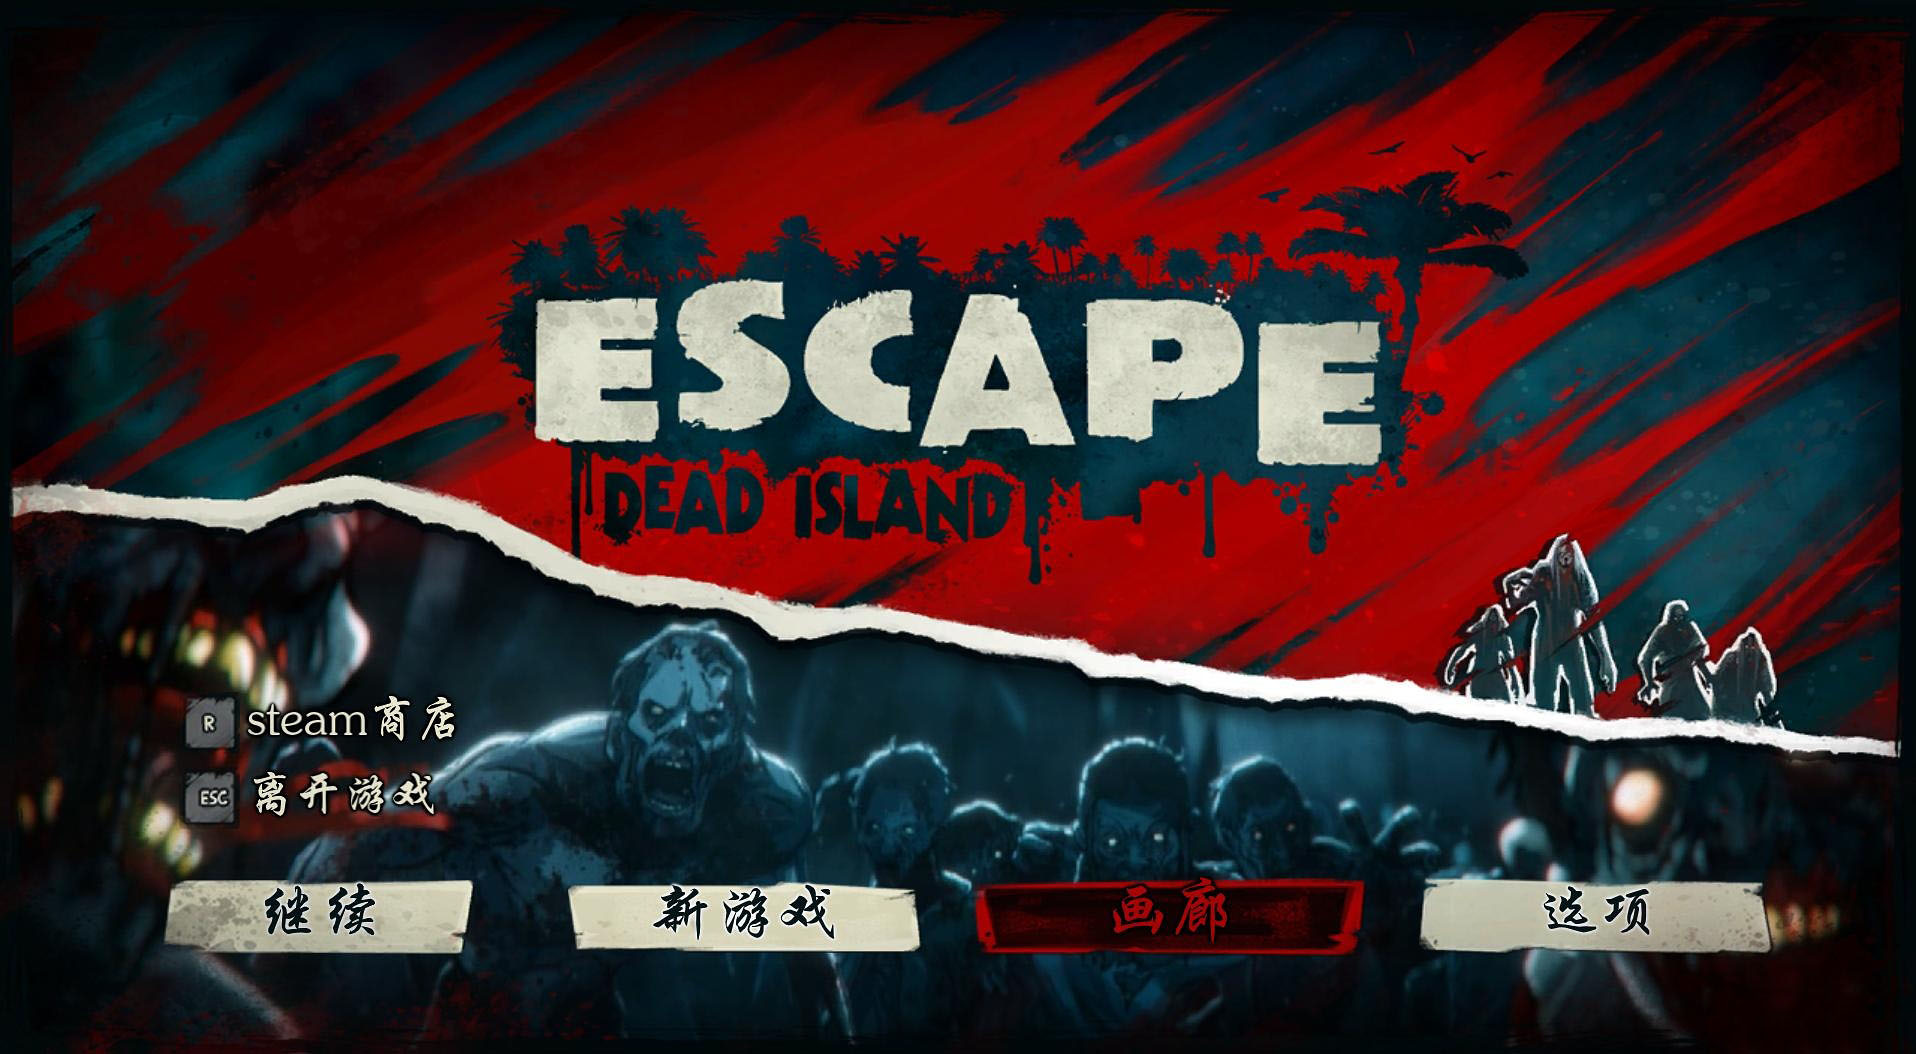 Escape Dead IslandCE޸Ľű